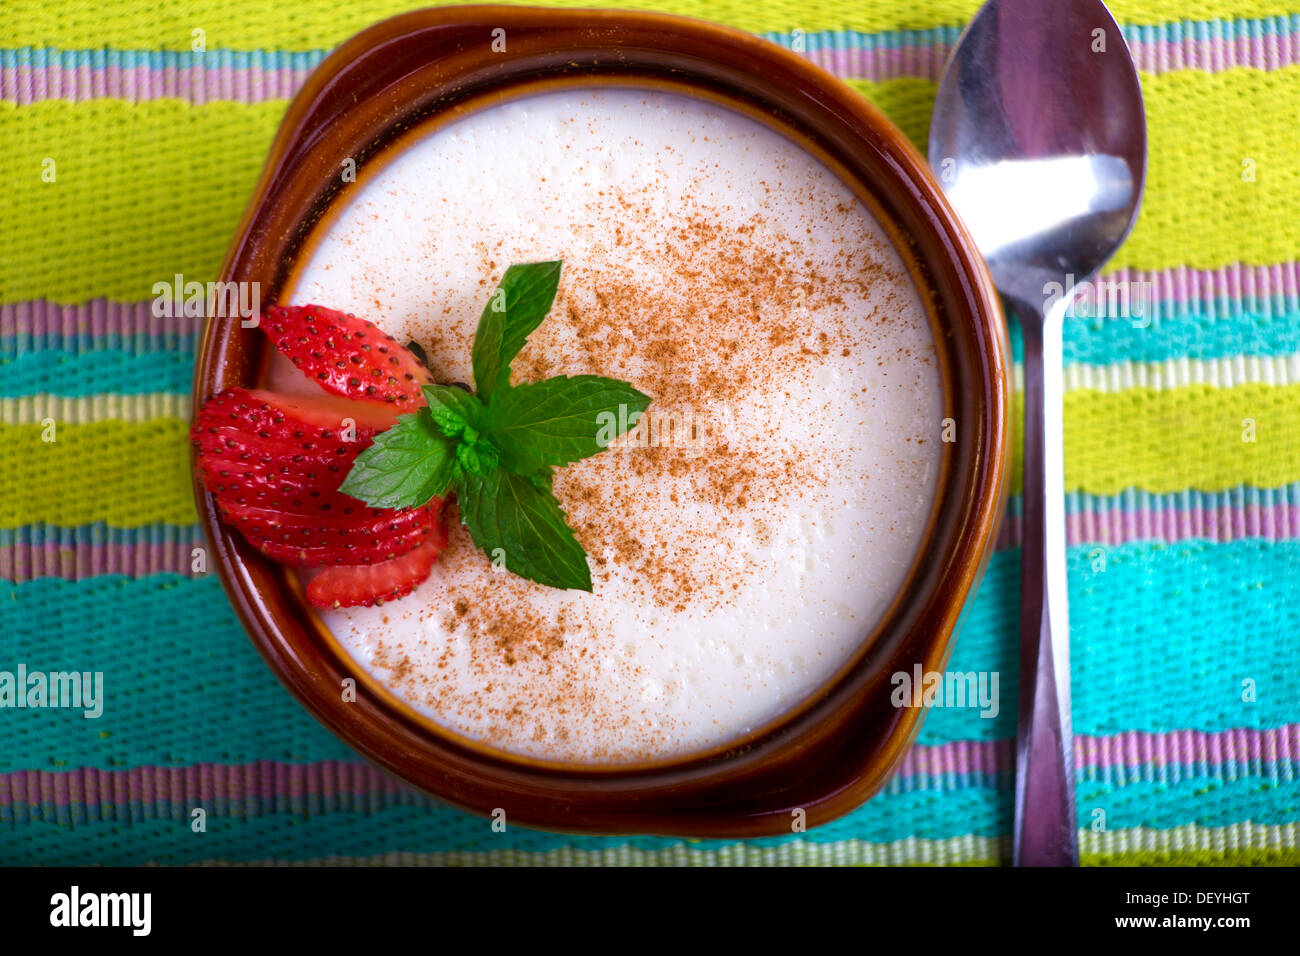 Le style turc riz au lait servi dans une cocotte et garnir de feuilles de menthe et fraise Banque D'Images